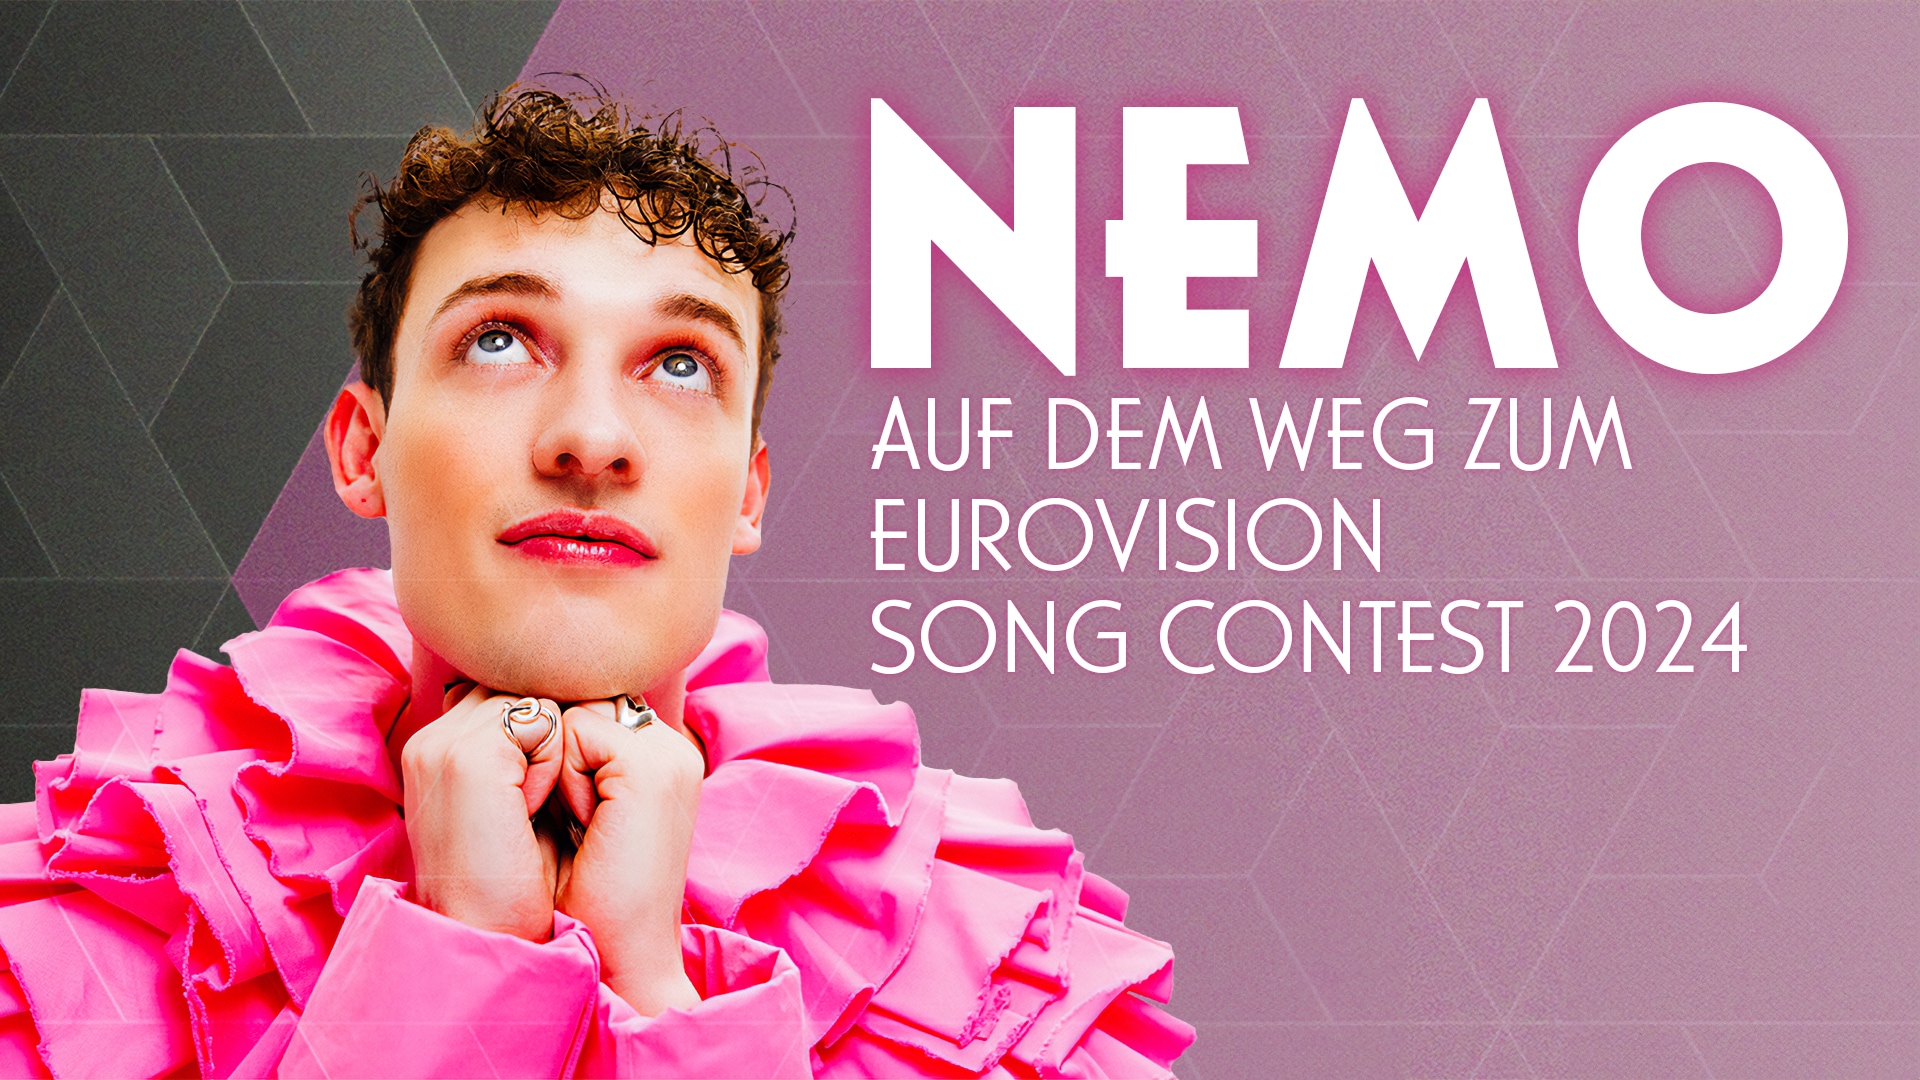 Nemo - Auf dem Weg zum Eurovision Song Contest 2024